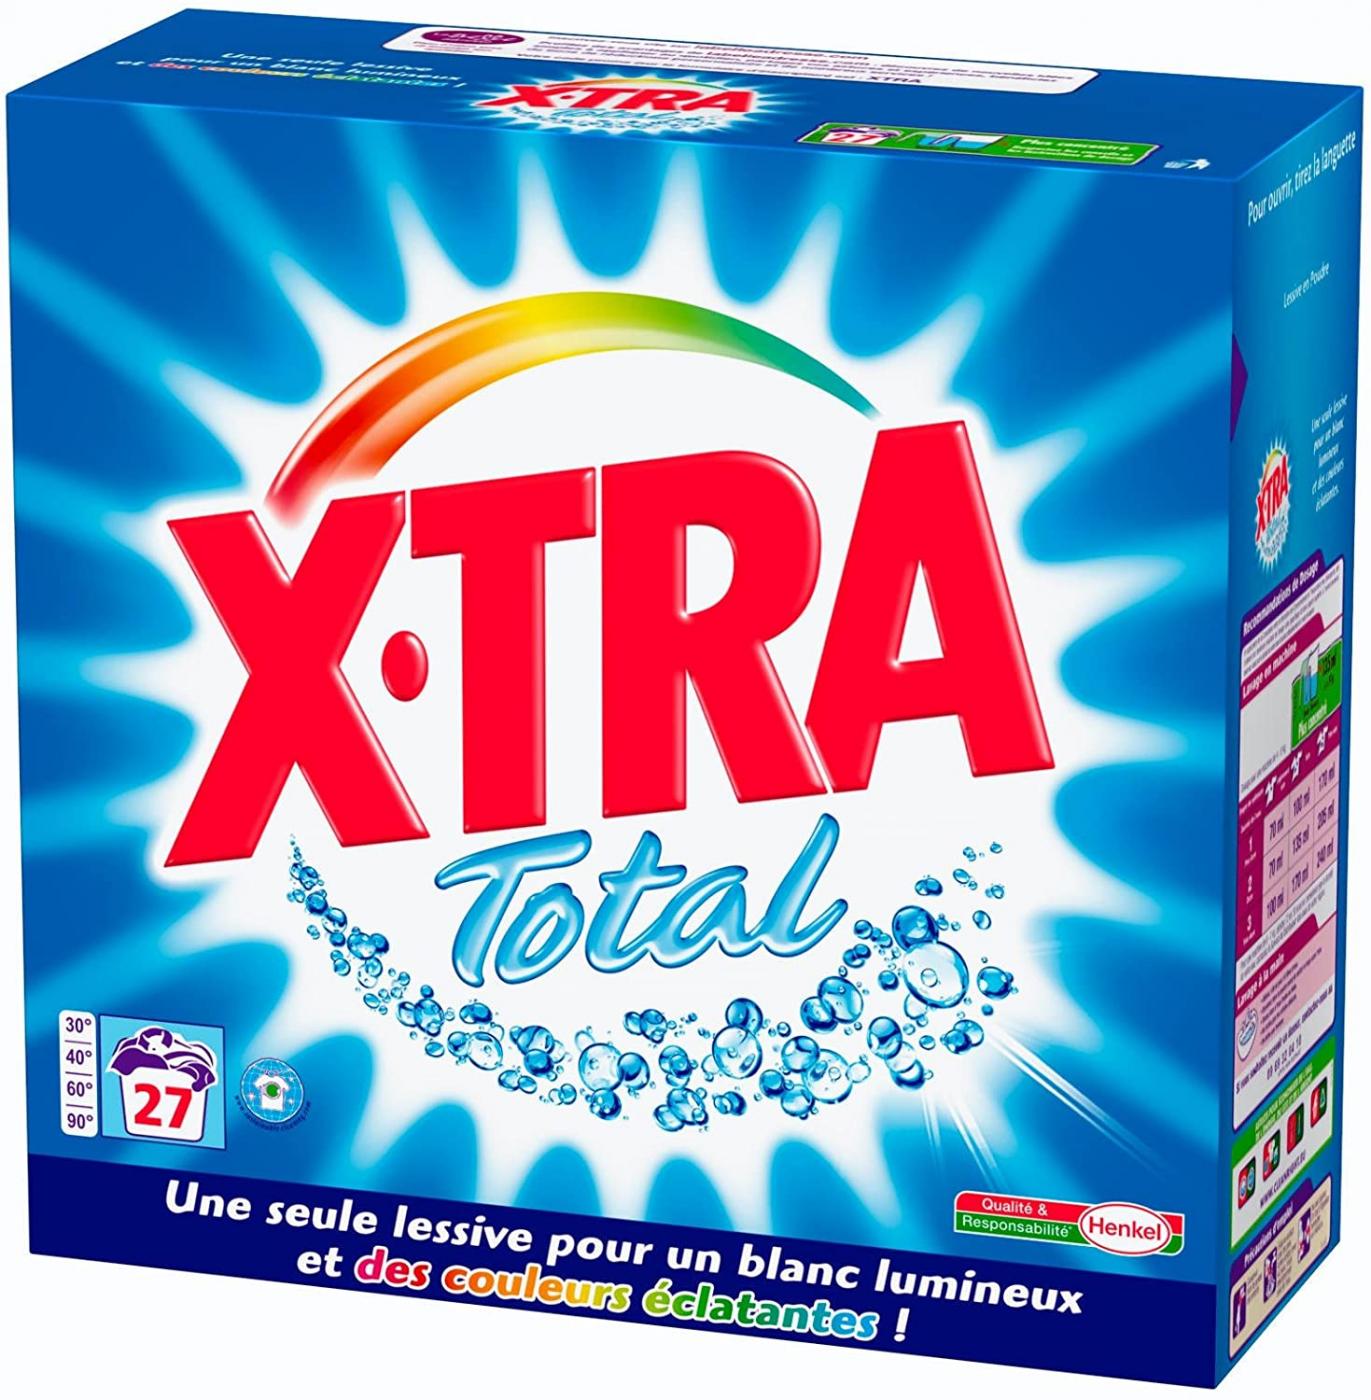 Xtra Total Washing Powder Box 27 Lavages